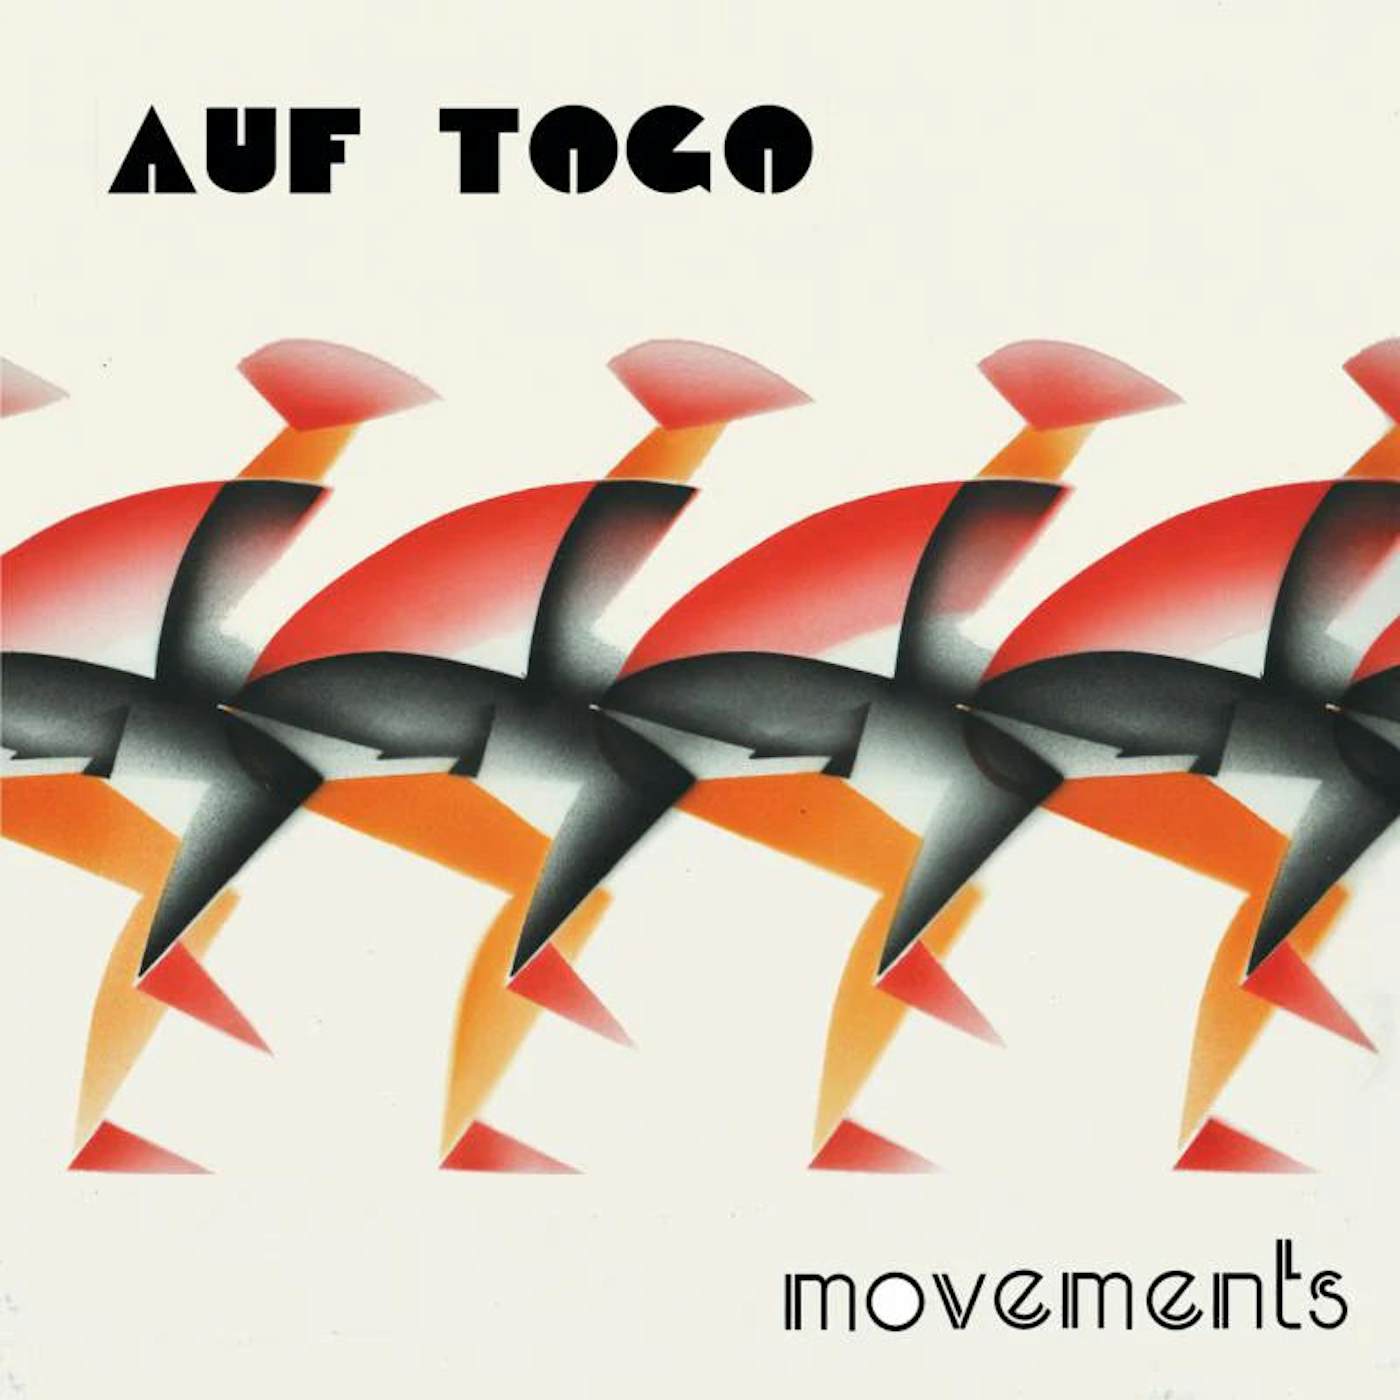 Auf Togo LP - Movements (Red Vinyl Edition)